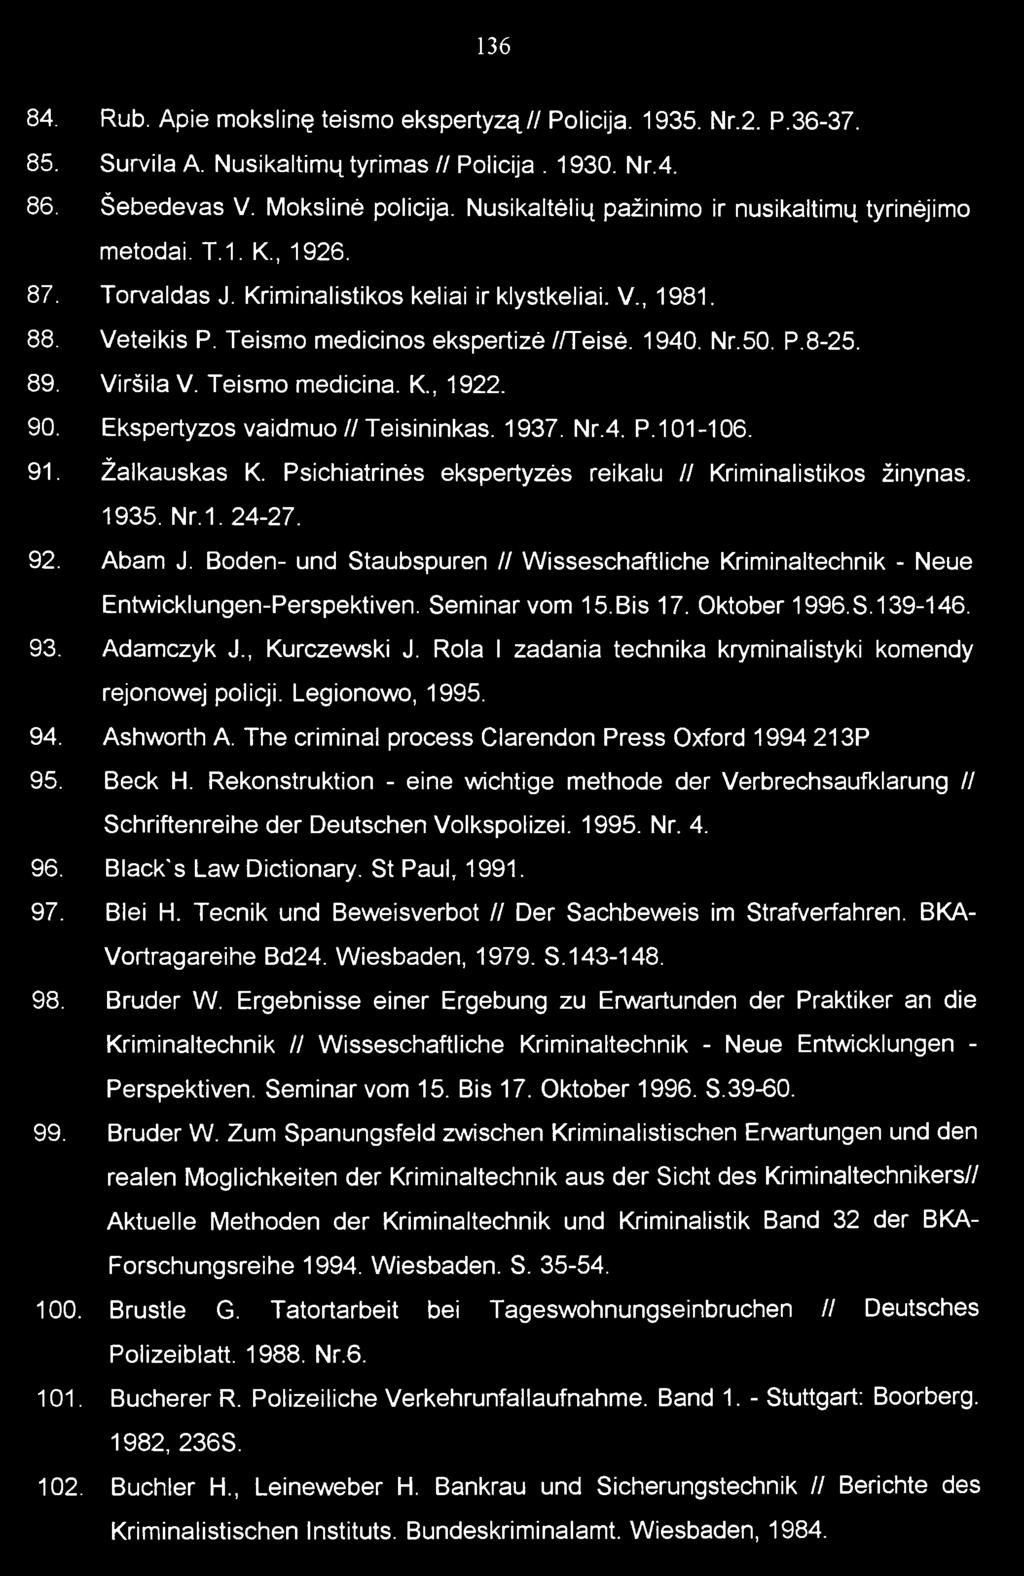 50. P.8-25. 89. Viršila V. Teismo medicina. K., 1922. 90. Ekspertyzos vaidm uo/ / Teisininkas. 1937. Nr.4. P.101-106. 91. Žalkauskas K. Psichiatrinės ekspertyzės reikalu // Kriminalistikos žinynas.